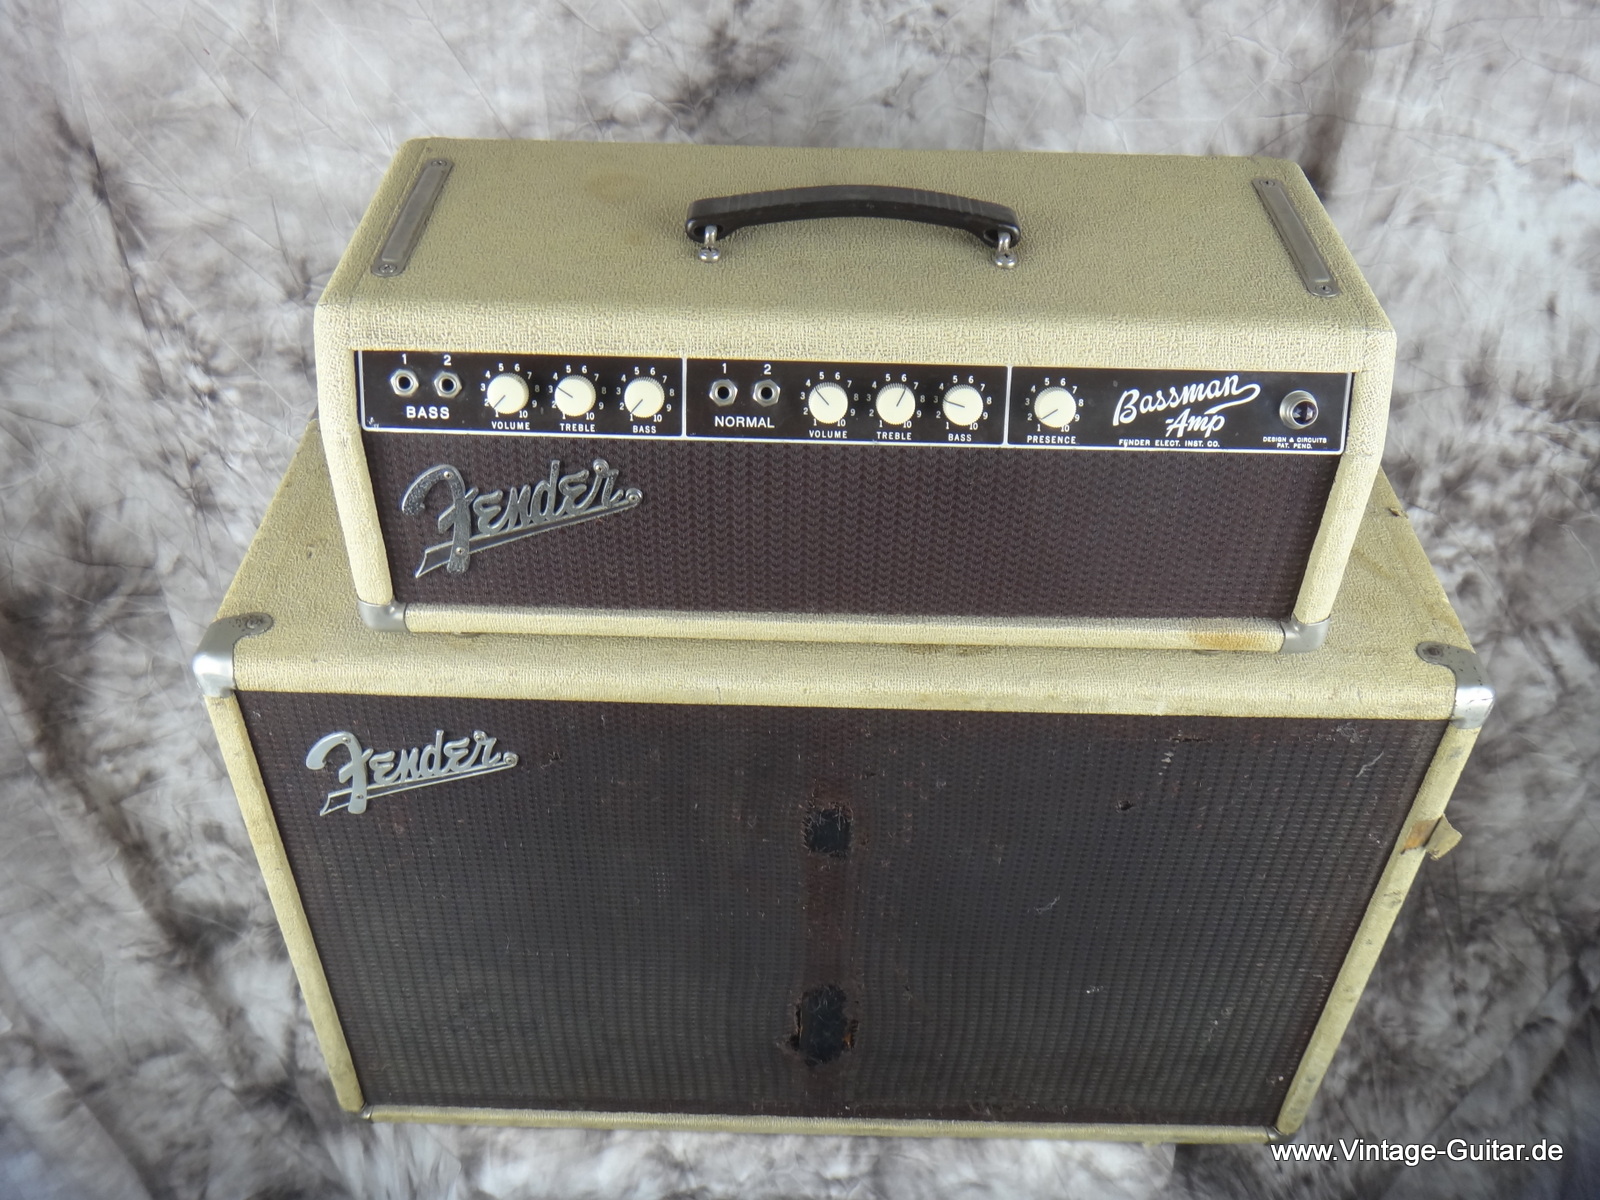 Fender-Bassman-1961-white-tolex-top-and-cabinet-002.JPG